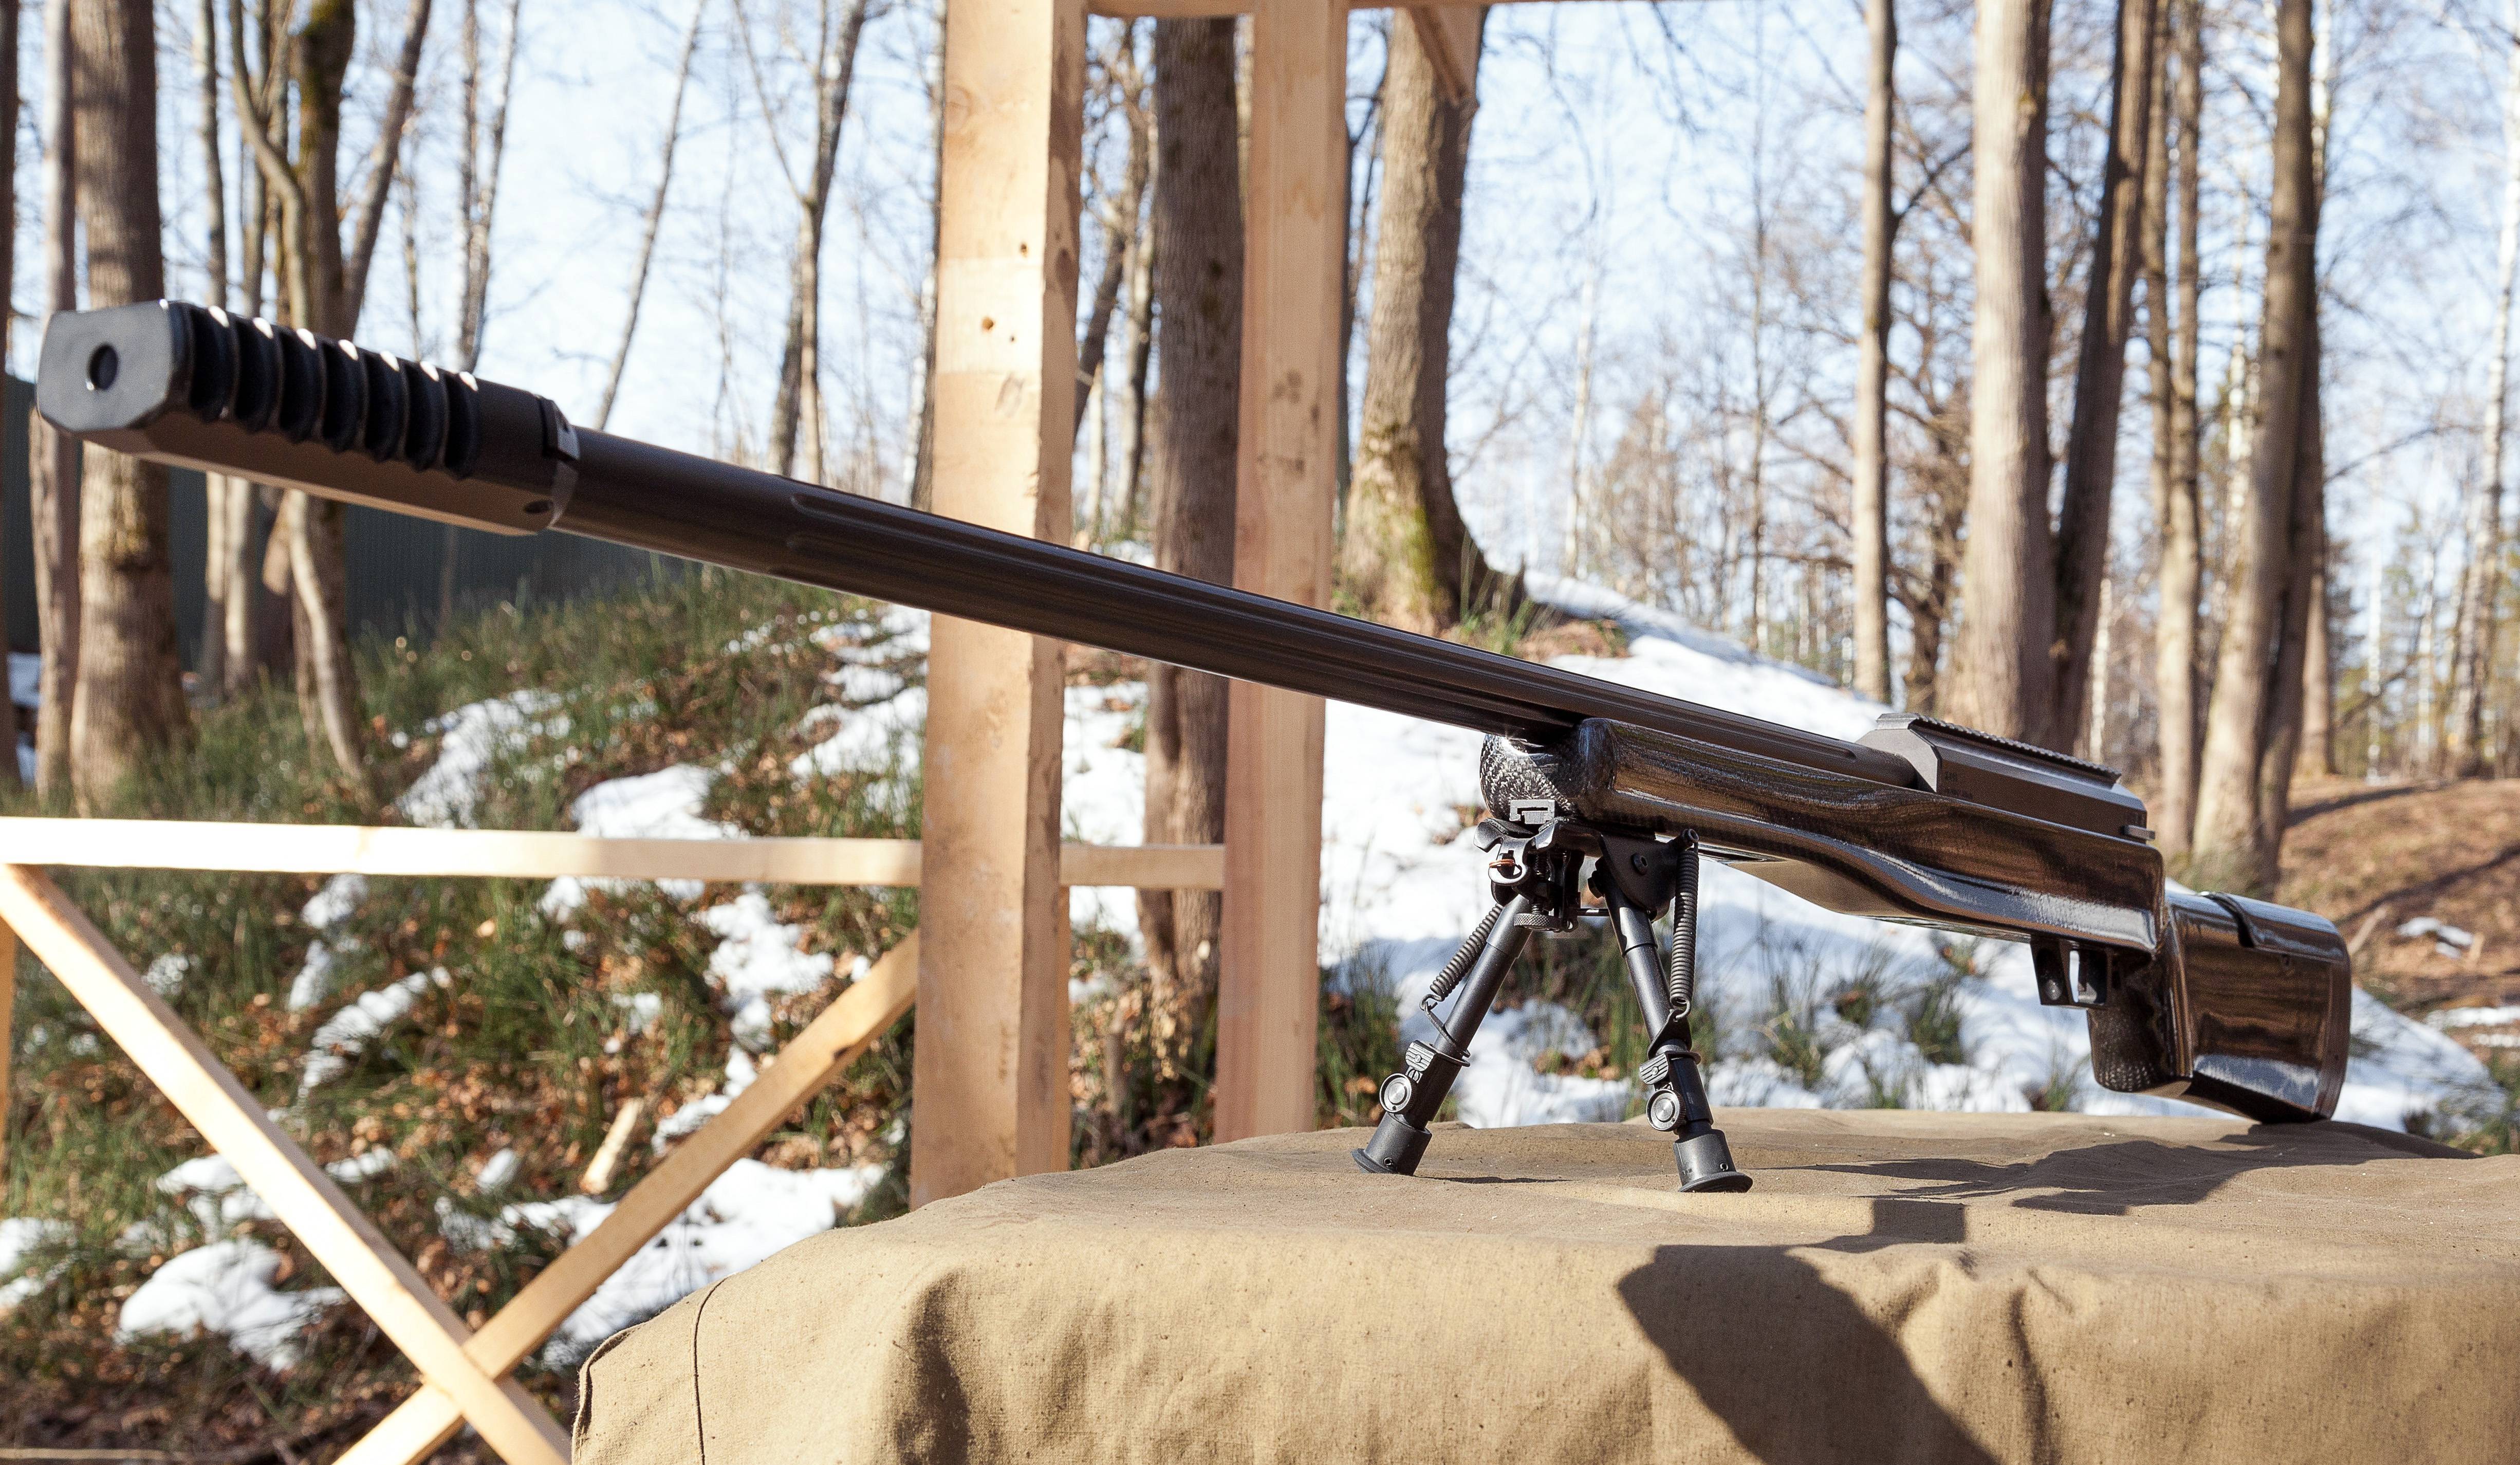 Снайперская винтовка лобаева — википедия